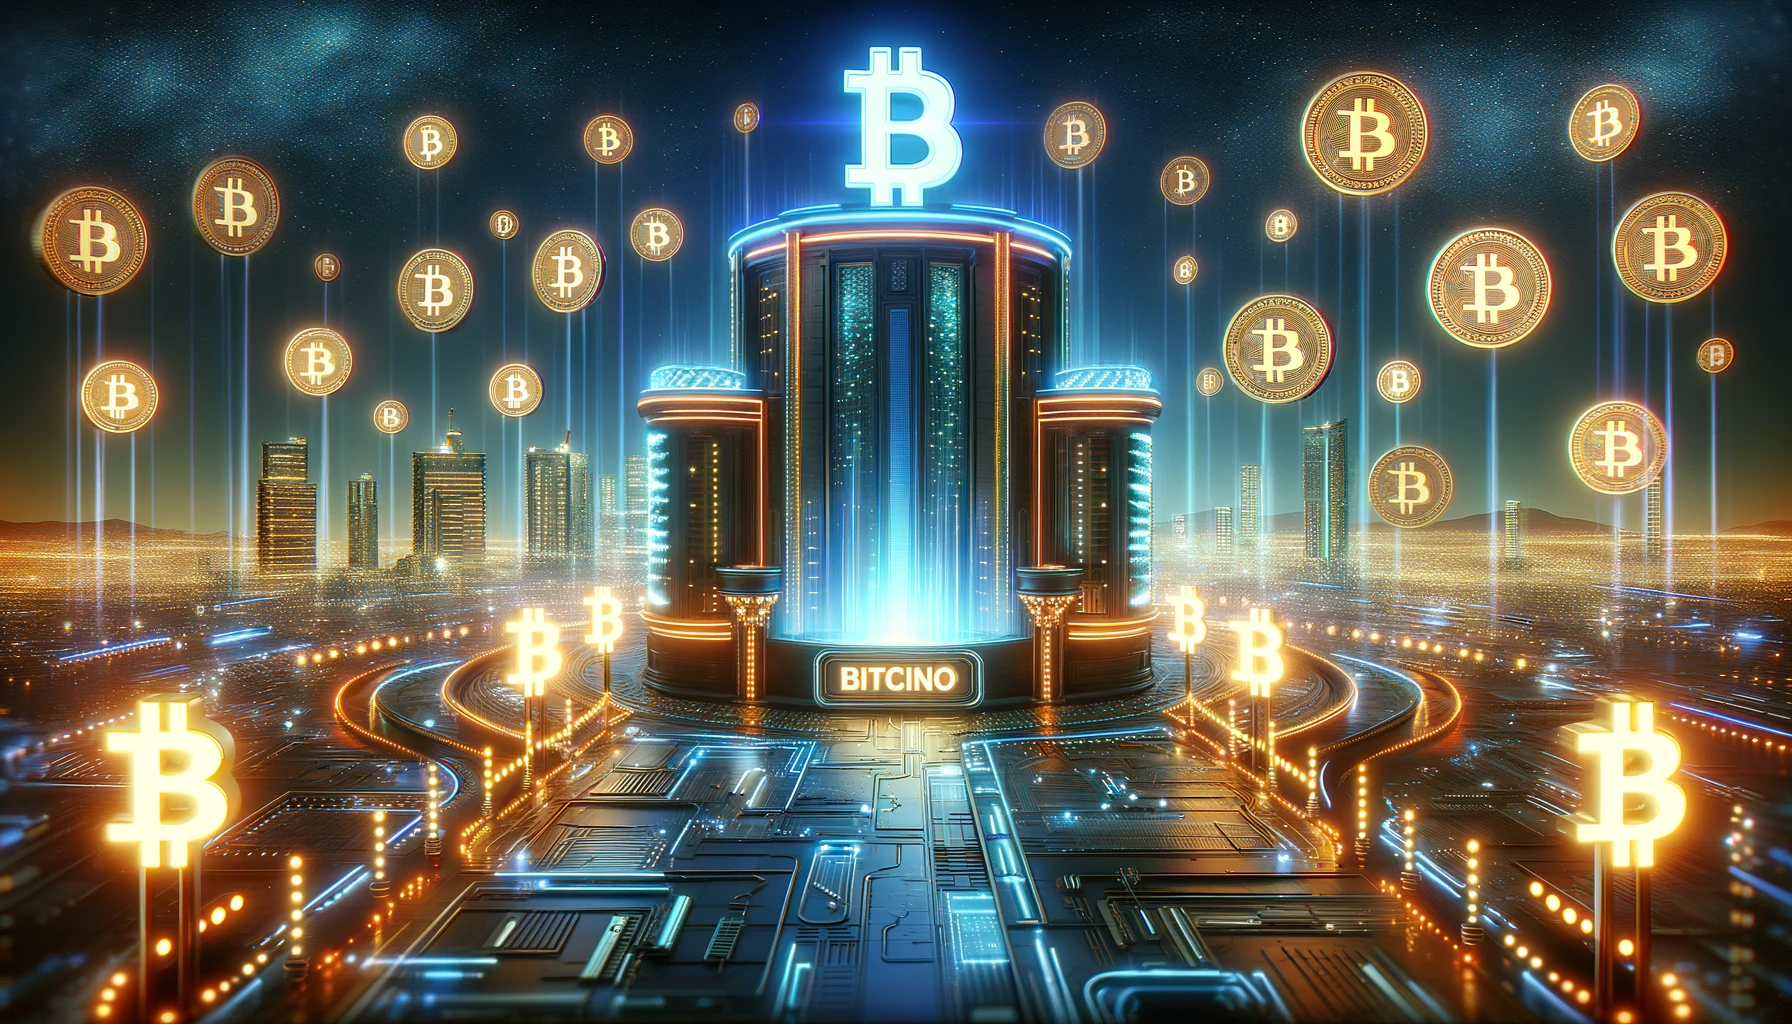 Bitcoin Casino no Deposit Boni – Kassieren ohne Einzahlung